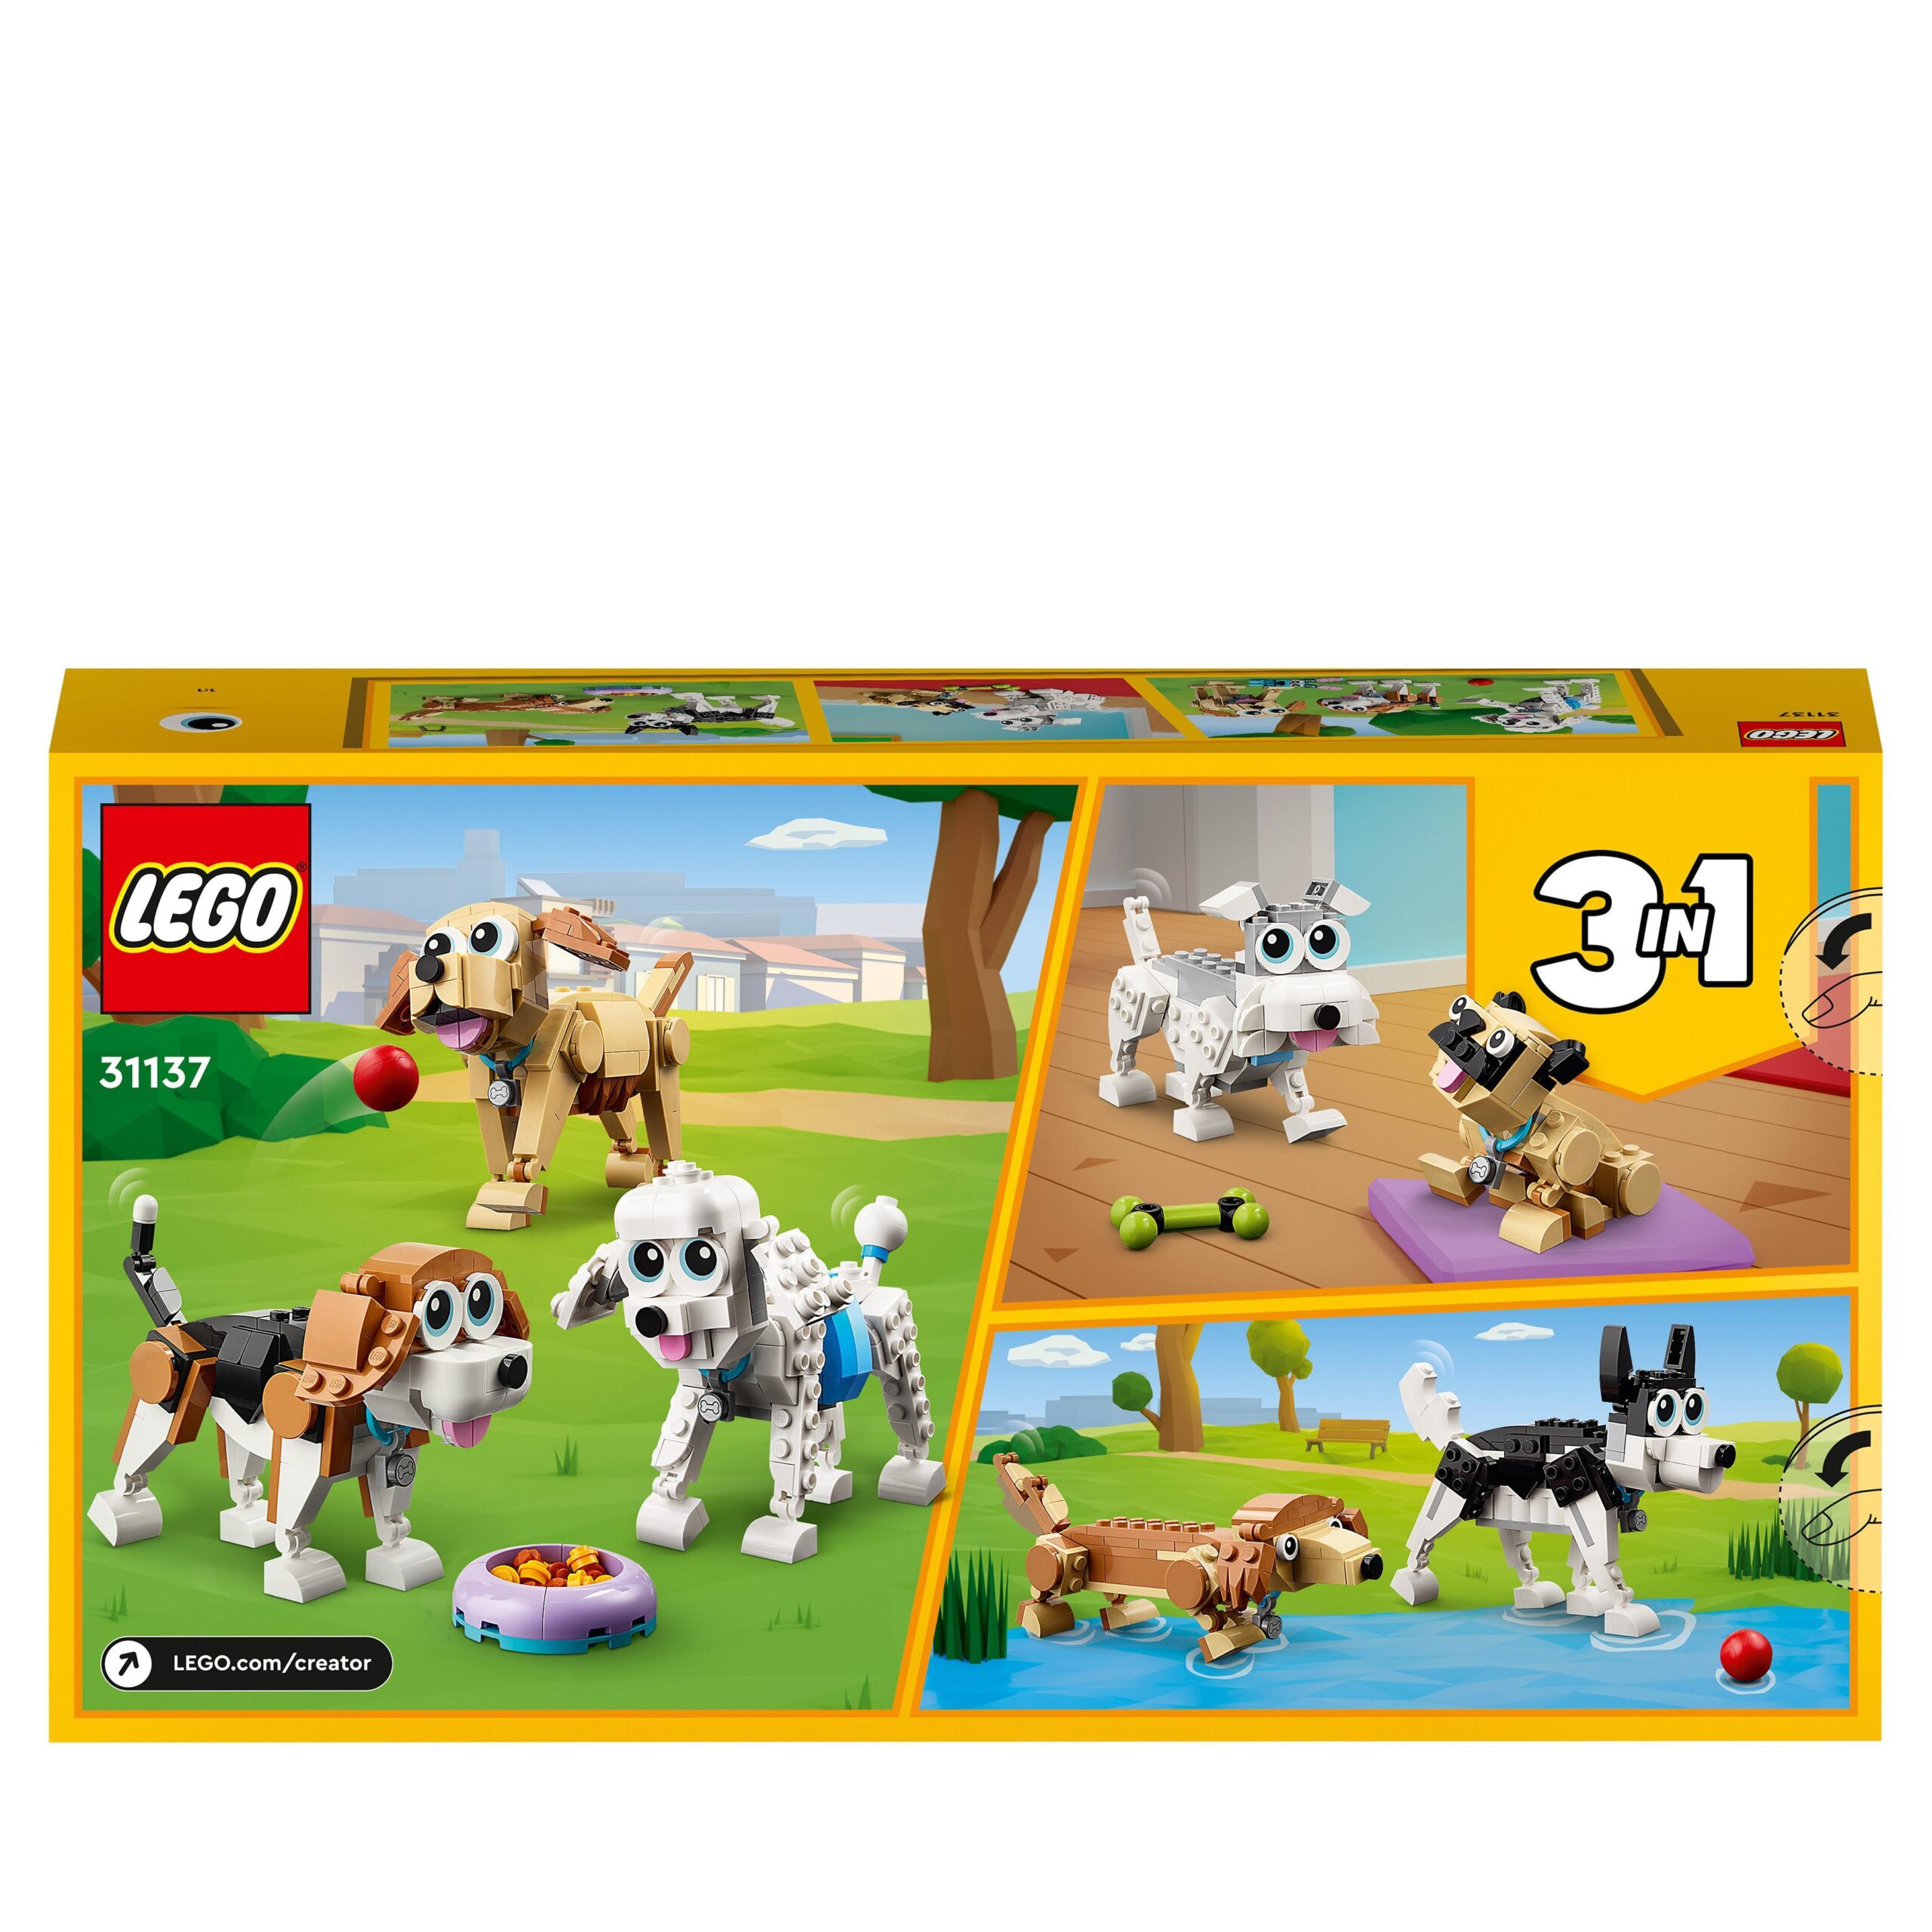 Lego creator 31137 adorabili cagnolini, set 3 in 1 con bassotto, carlino, barboncino e altri animali giocattolo da costruire - LEGO CREATOR